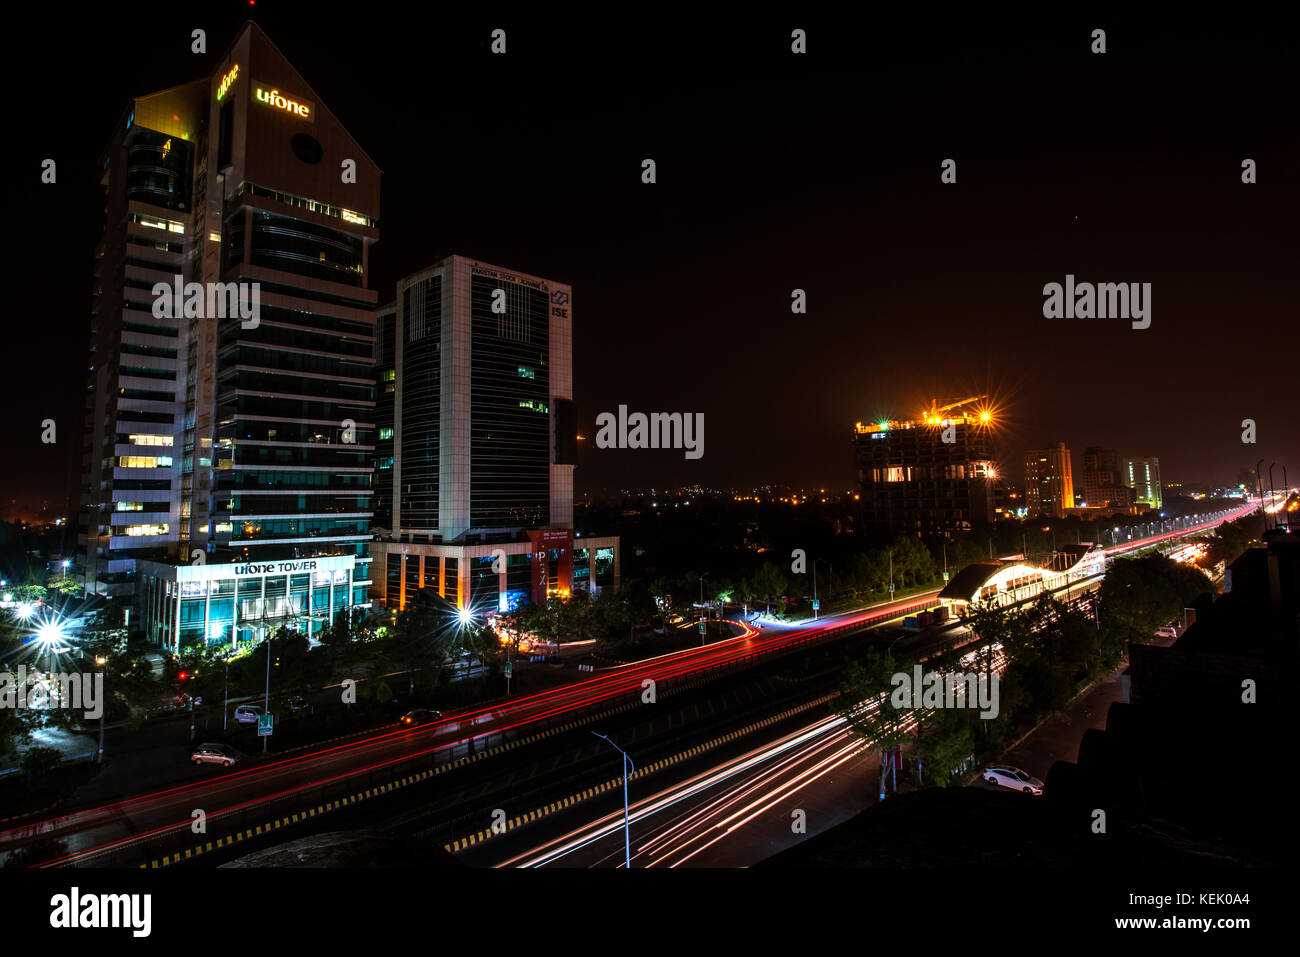 Vue de nuit sur Islamabad bourse, ufone tower, metro station de bus, bleu sont Islamabad Banque D'Images